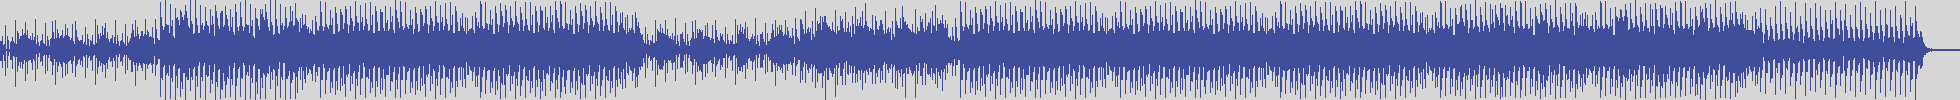 nf_boyz_records [NFY025] Jeff Goldmann - Syndrome Maya [Frequency Mix] audio wave form